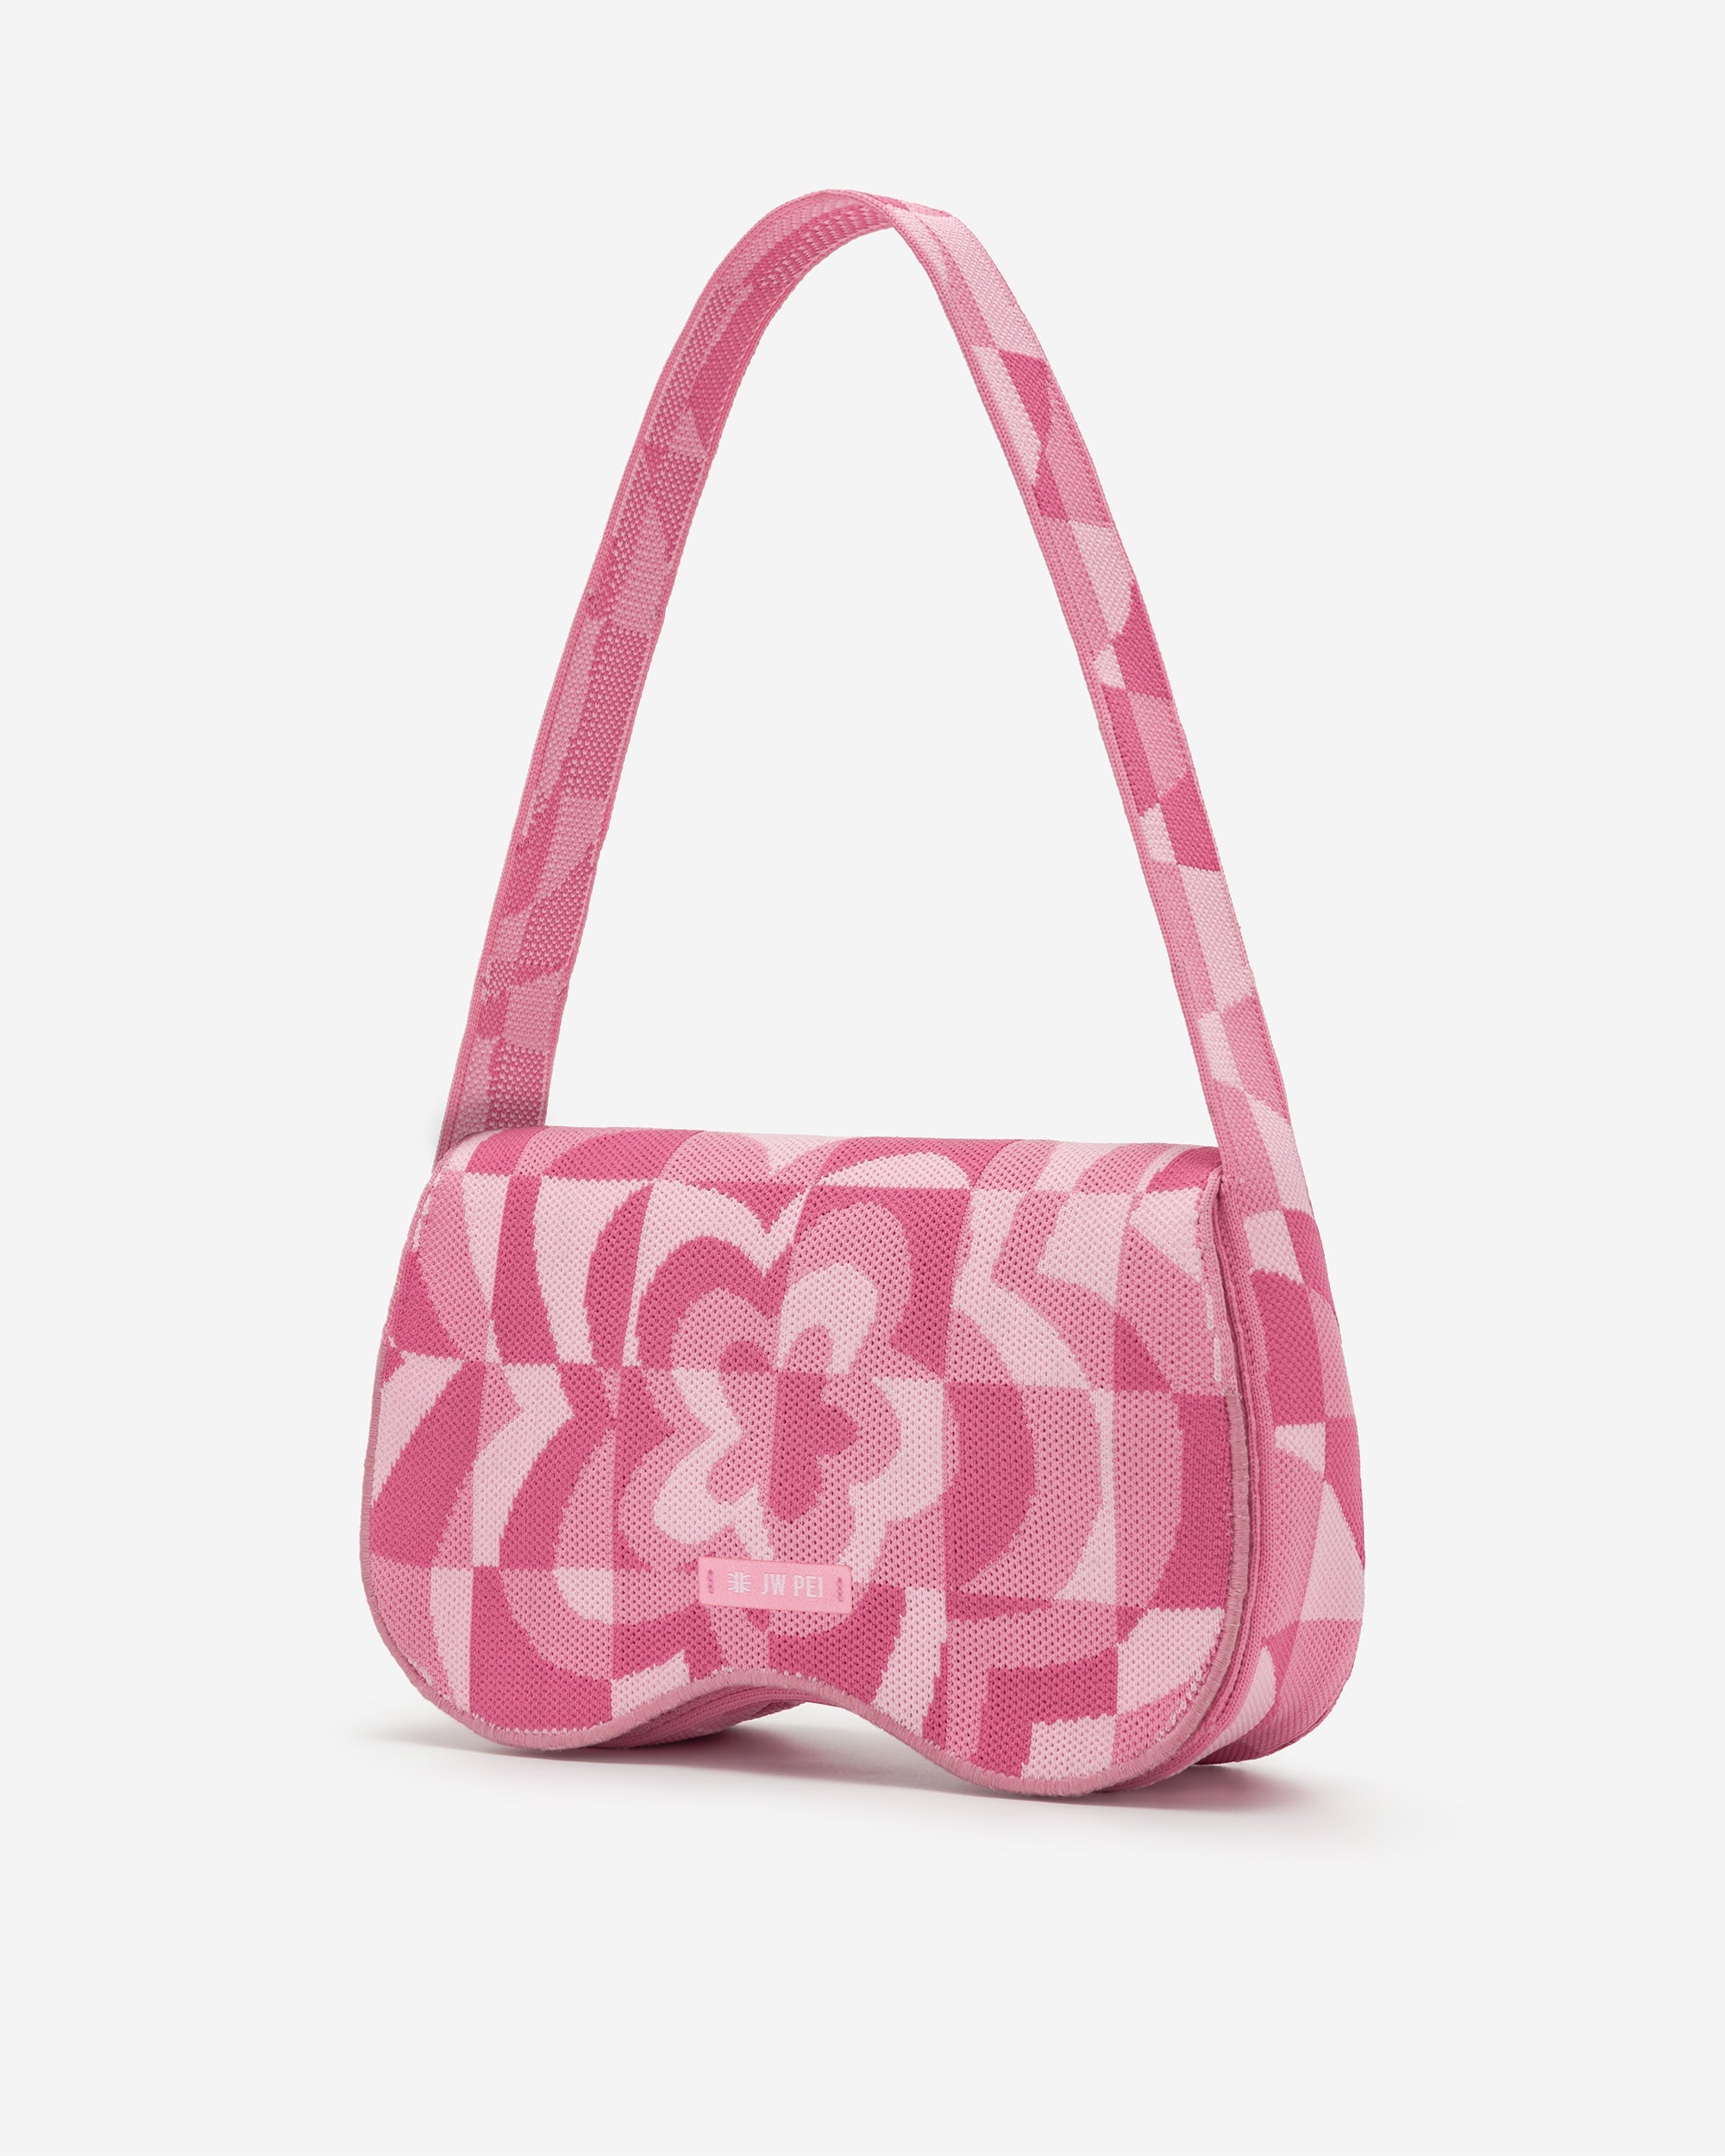 Becci Knitted Shoulder Bag - Pale Pink & Pink & Hot Pink